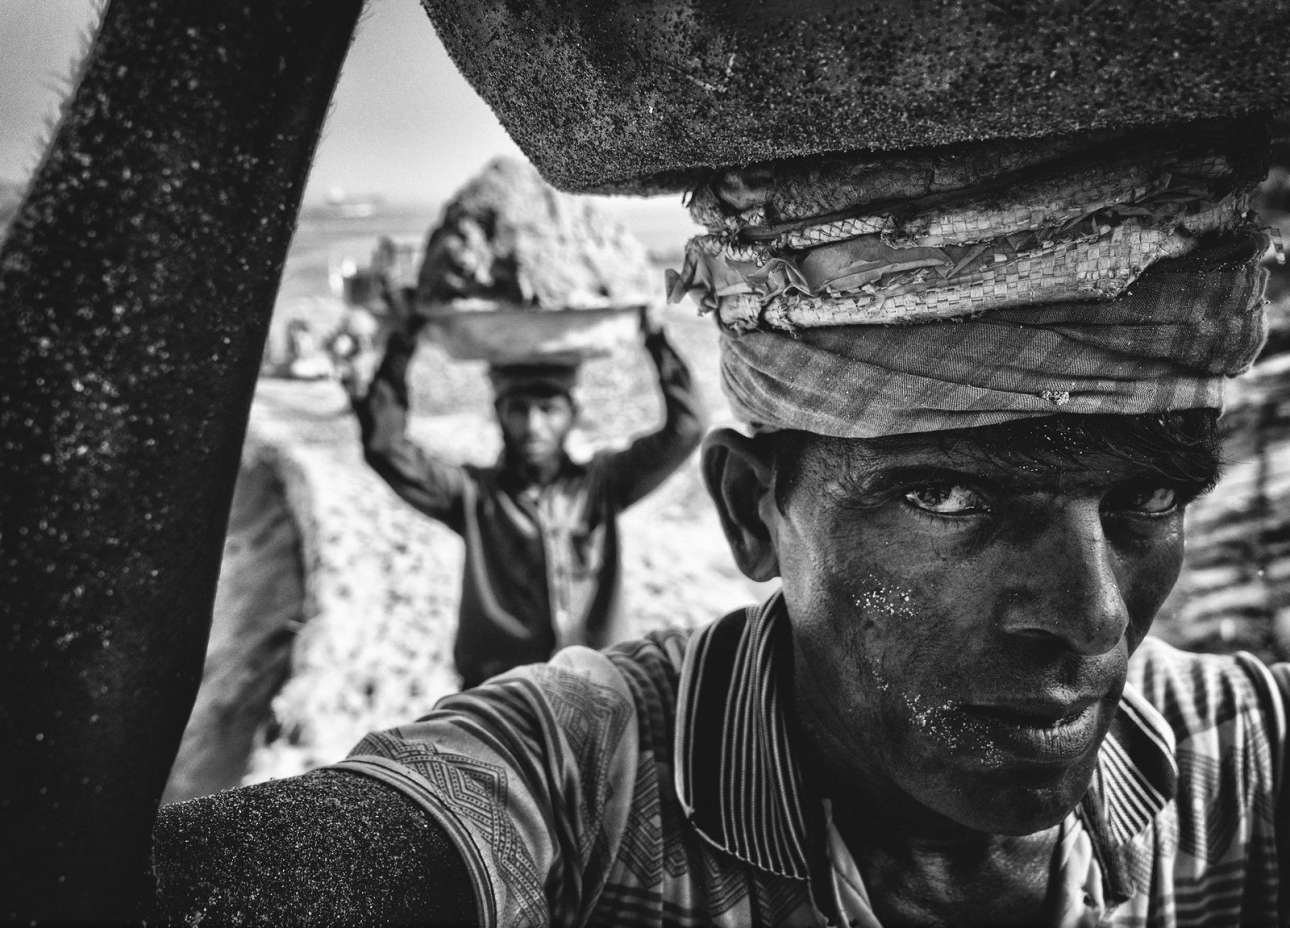 «Αμμοκουβαλητής» - Βραβείο κοινού, κατηγορία Ανθρωποι. Μία εξαιρετική σύνθεση, ένα δυνατό κάδρο: αχθοφόροι μεταφέρουν άμμο στις όχθες του ποταμού Νταλεσουάρι στο Μπαγκλαντές